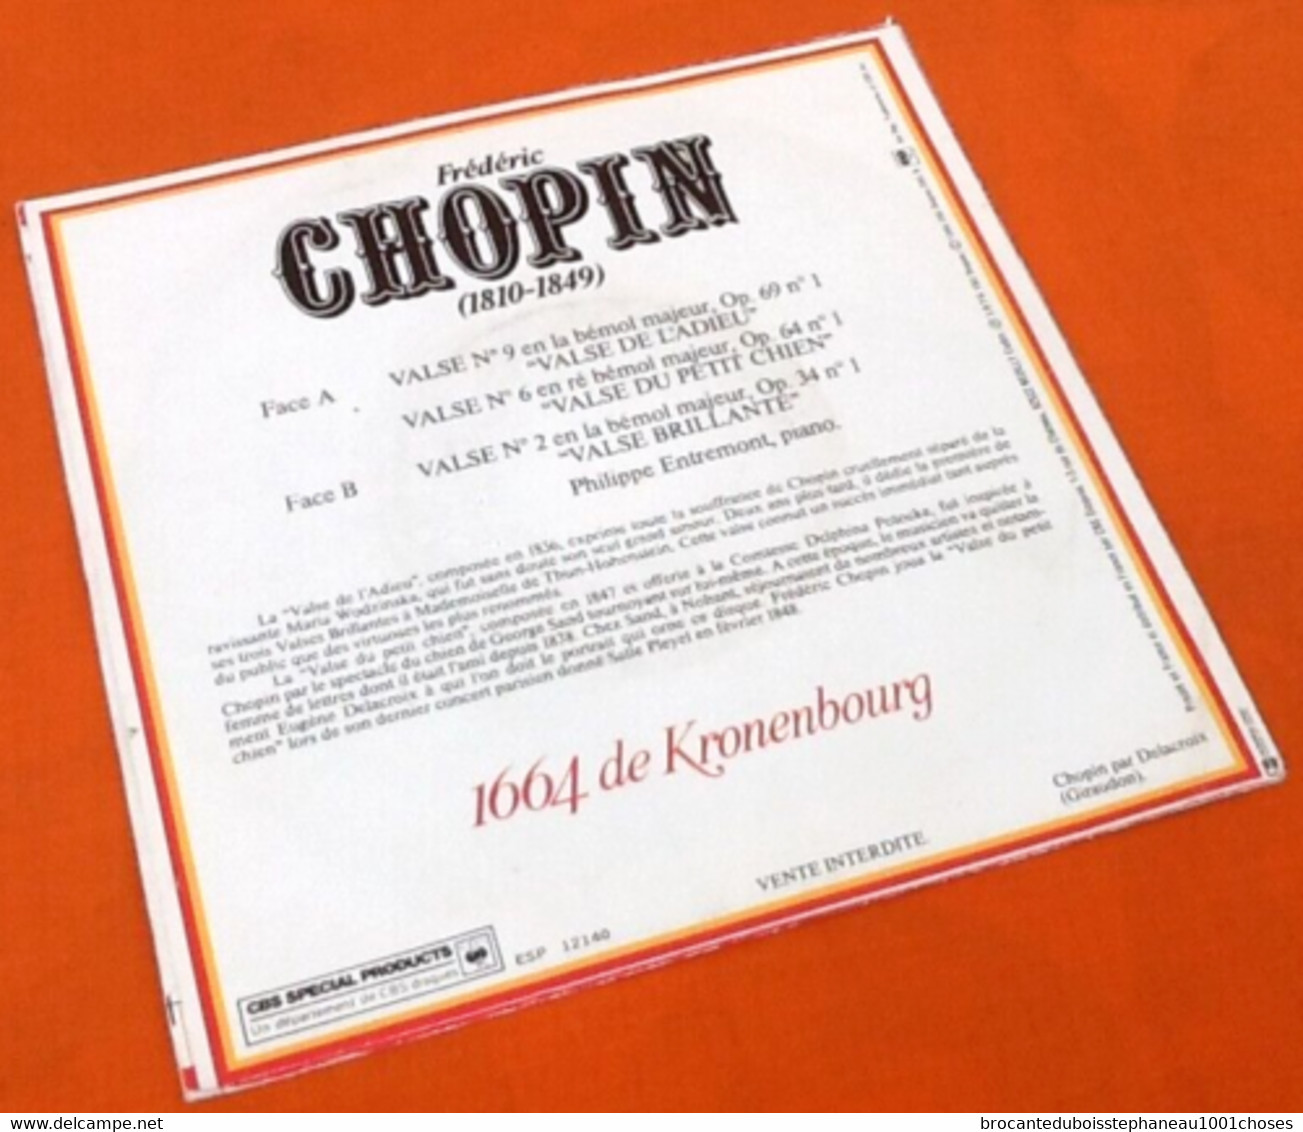 Vinyle 45 Tours  Frédéric  Chopin / Philippe Entremont  Valses  (1976) - Klassik